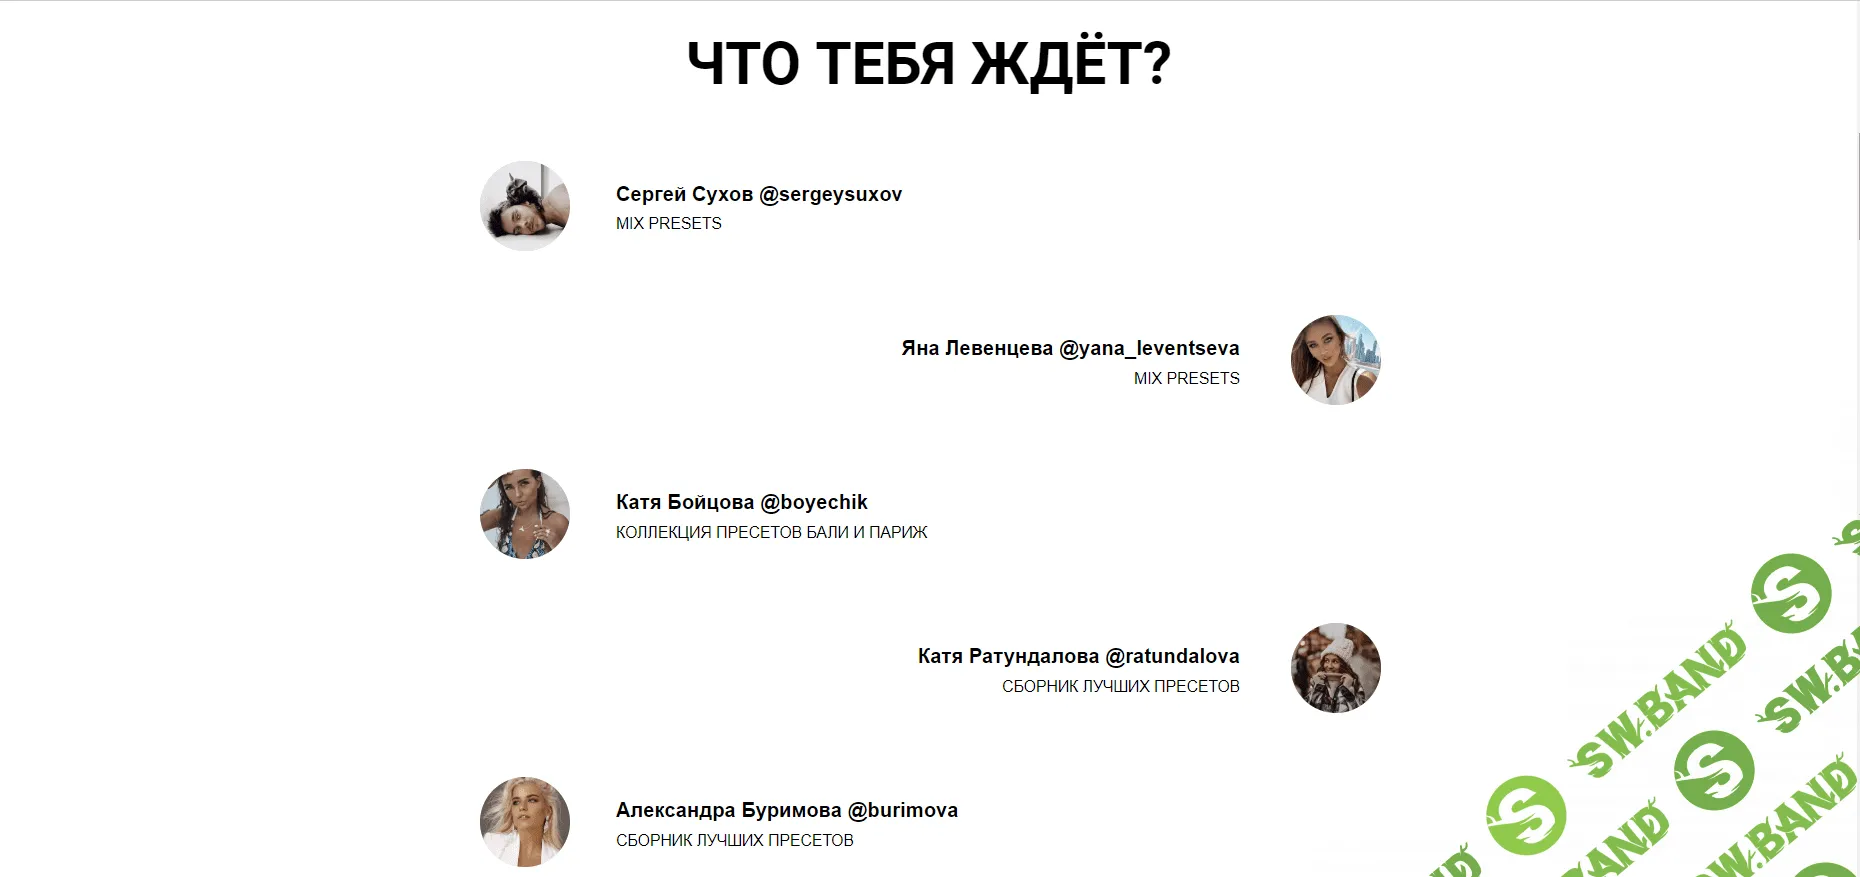 [toppresets] 100 топовых пресетов от самых известных блогеров России